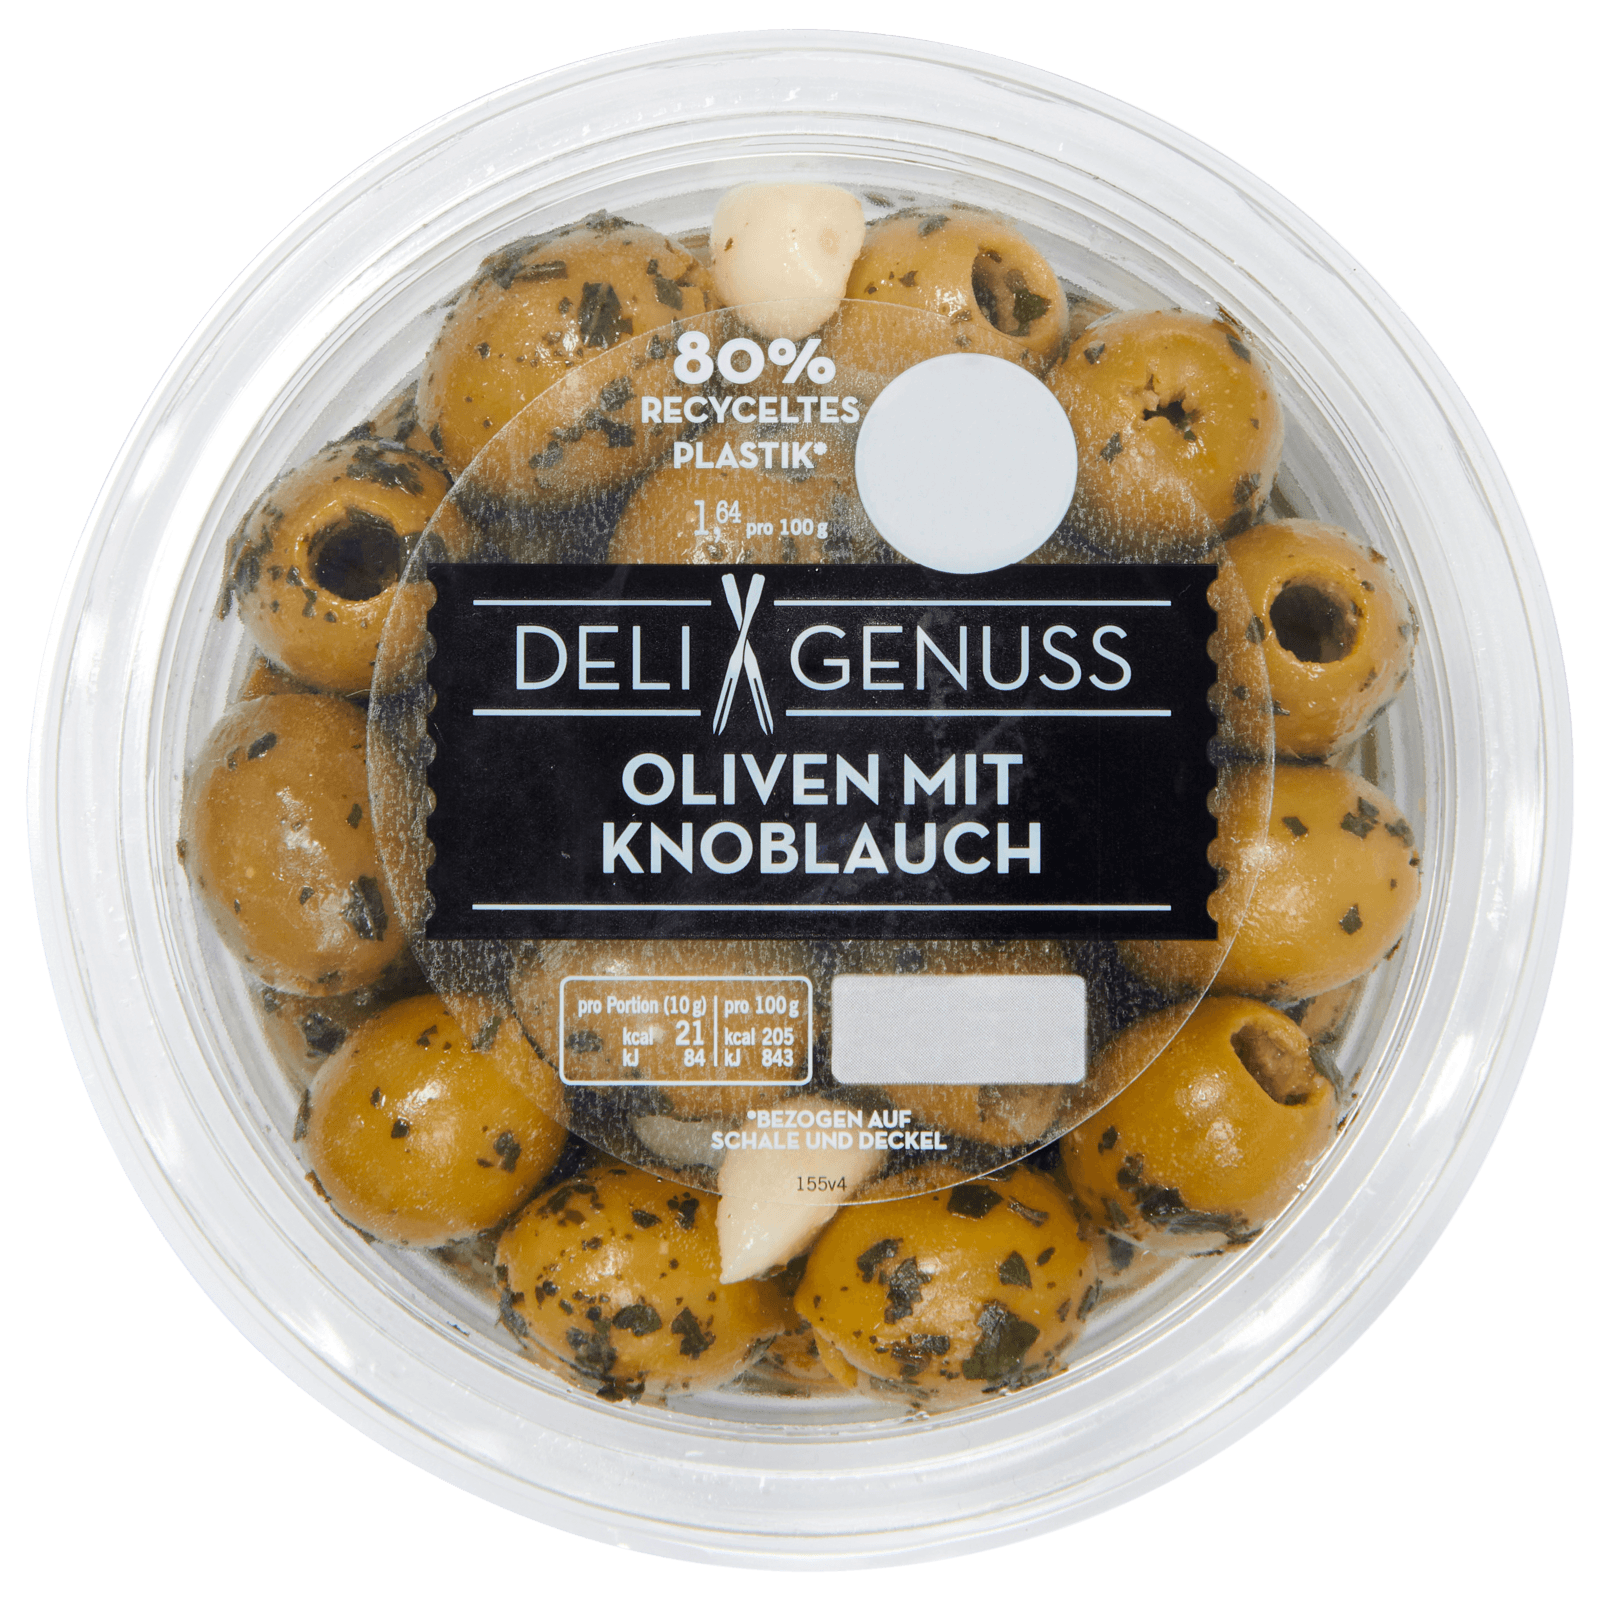 Deli Genuss Oliven mit Knoblauch 165g bei REWE online bestellen!